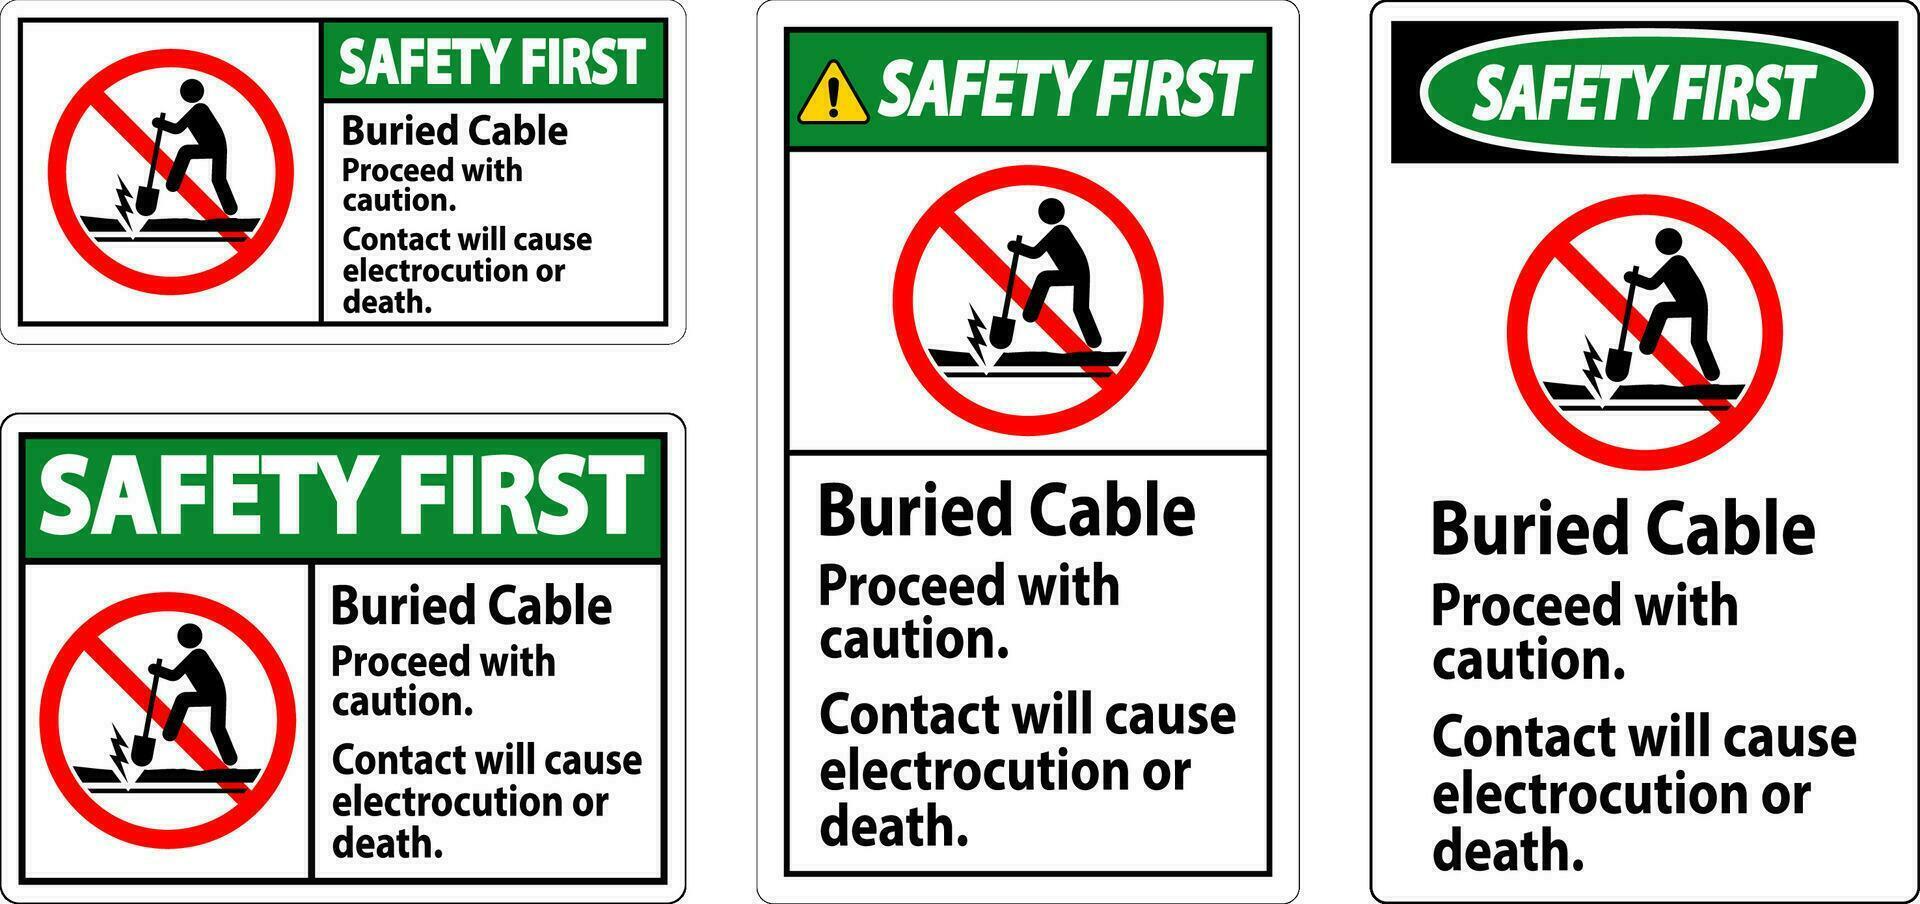 sécurité premier signe enterré câble, procéder avec avertir, contact volonté cause électrocution ou décès vecteur